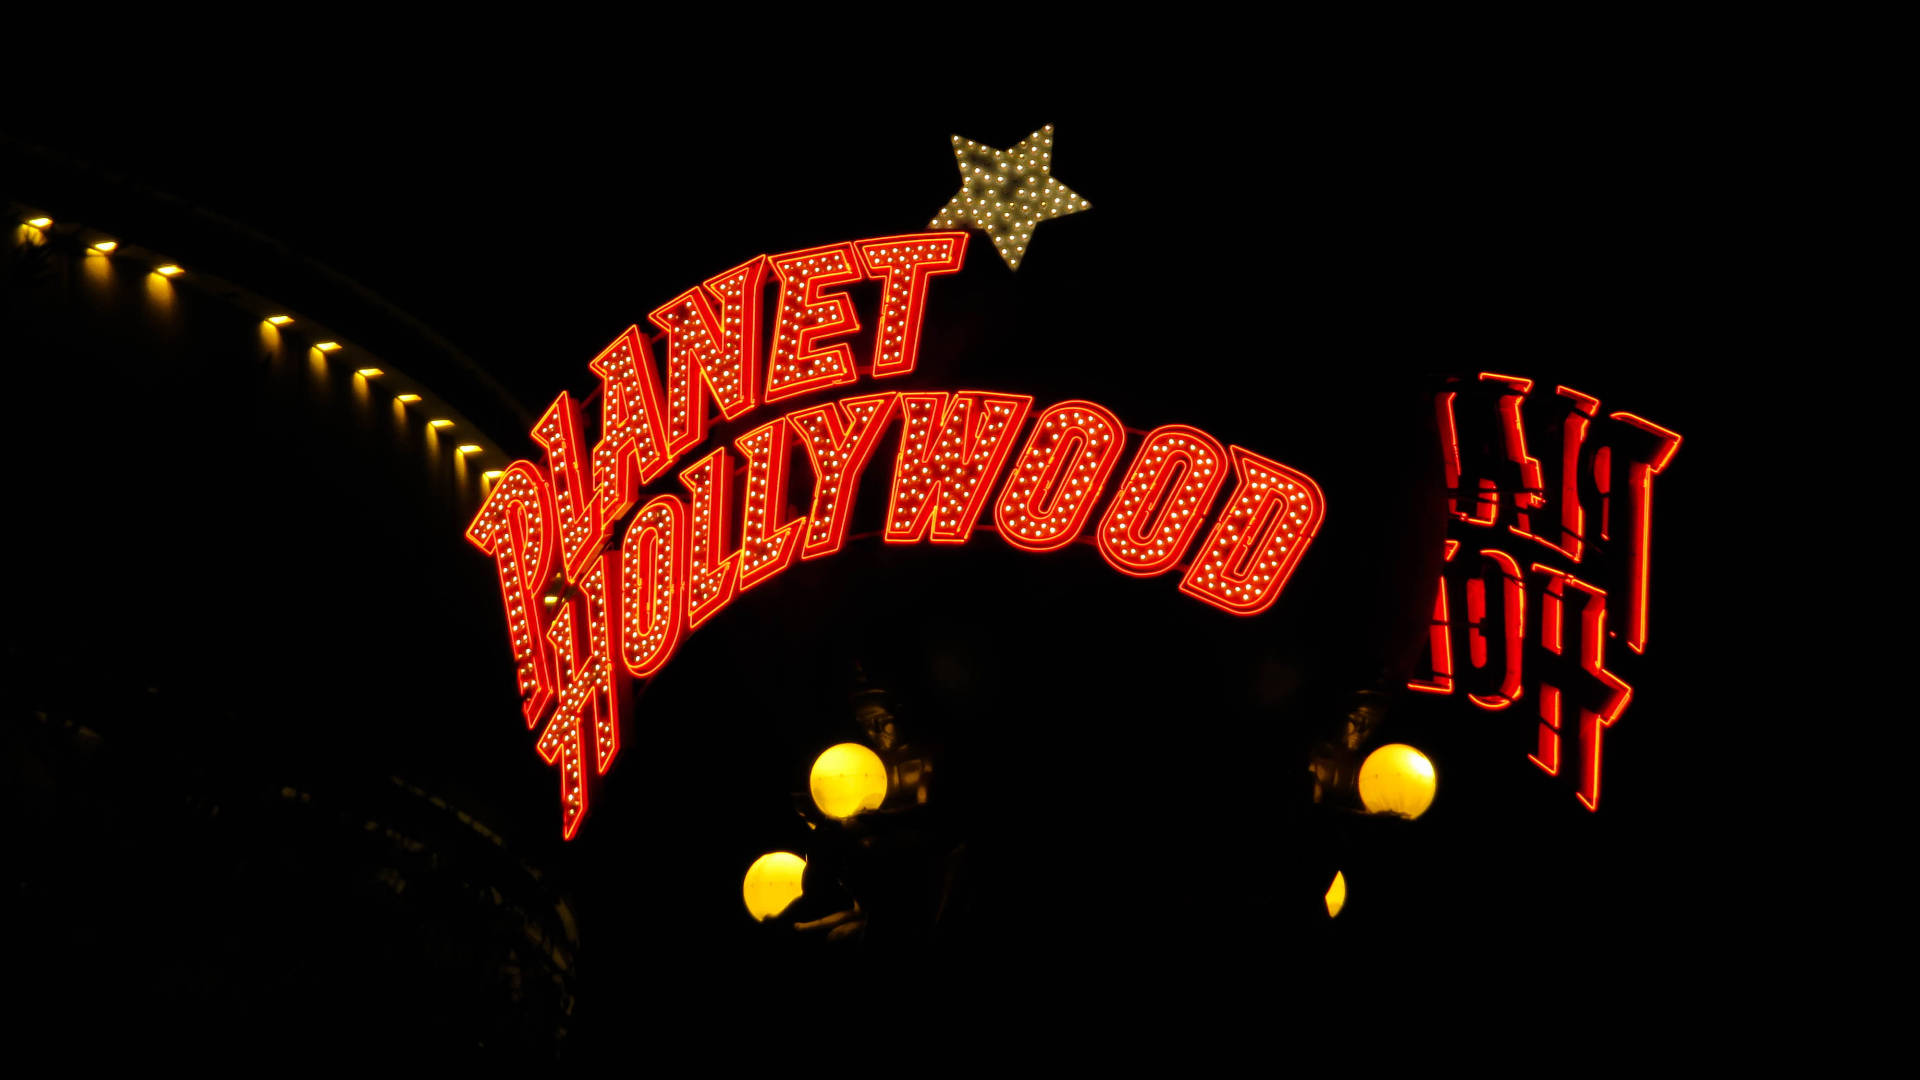 Planet Hollywood Signage Background